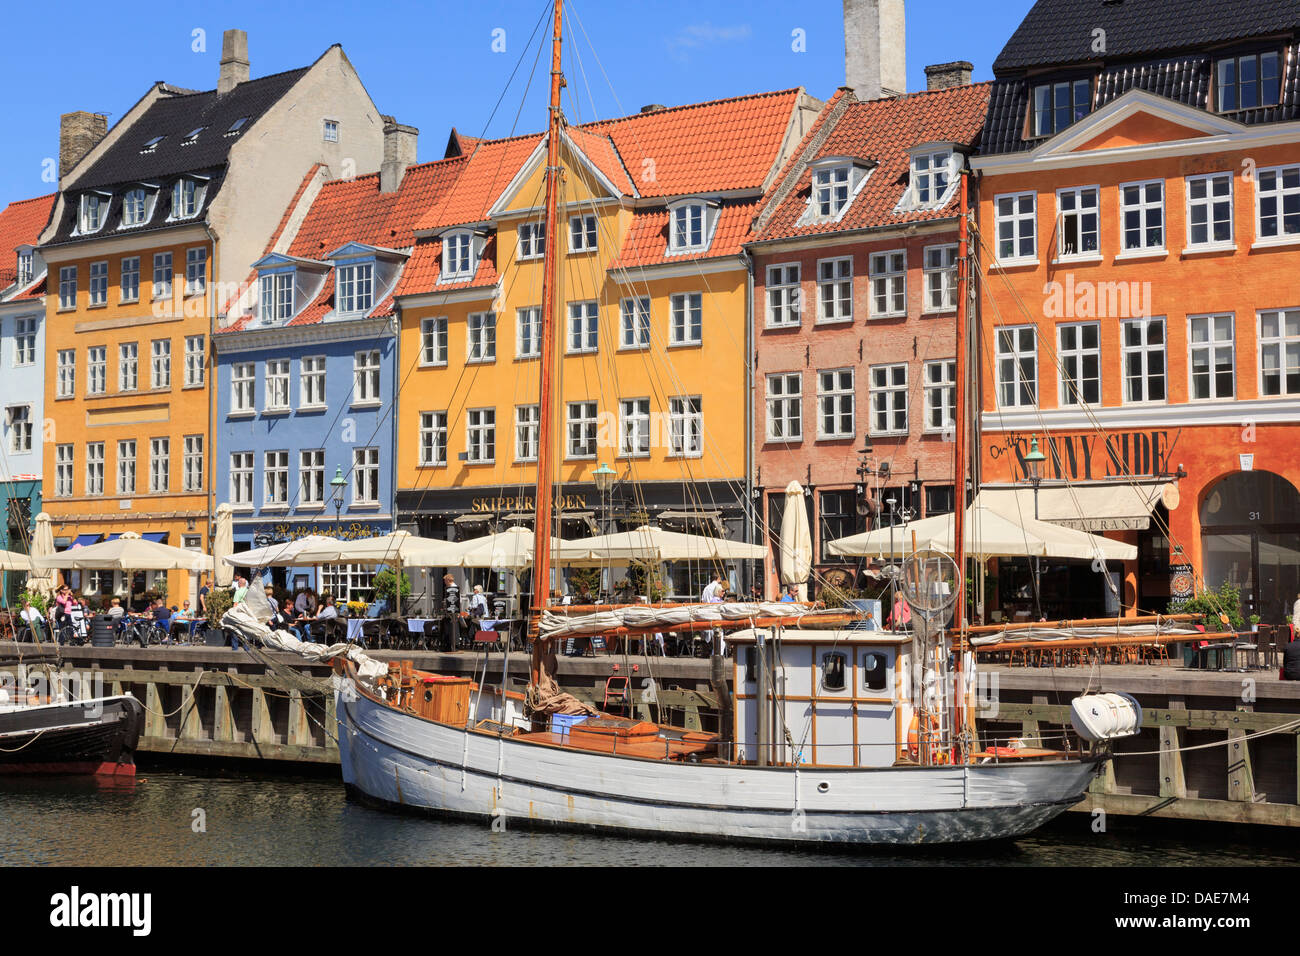 Vieux bateau en bois sur canal avec cafés et bâtiments colorés sur la 17ème siècle en bord de mer du port de Nyhavn Copenhague Danemark Banque D'Images